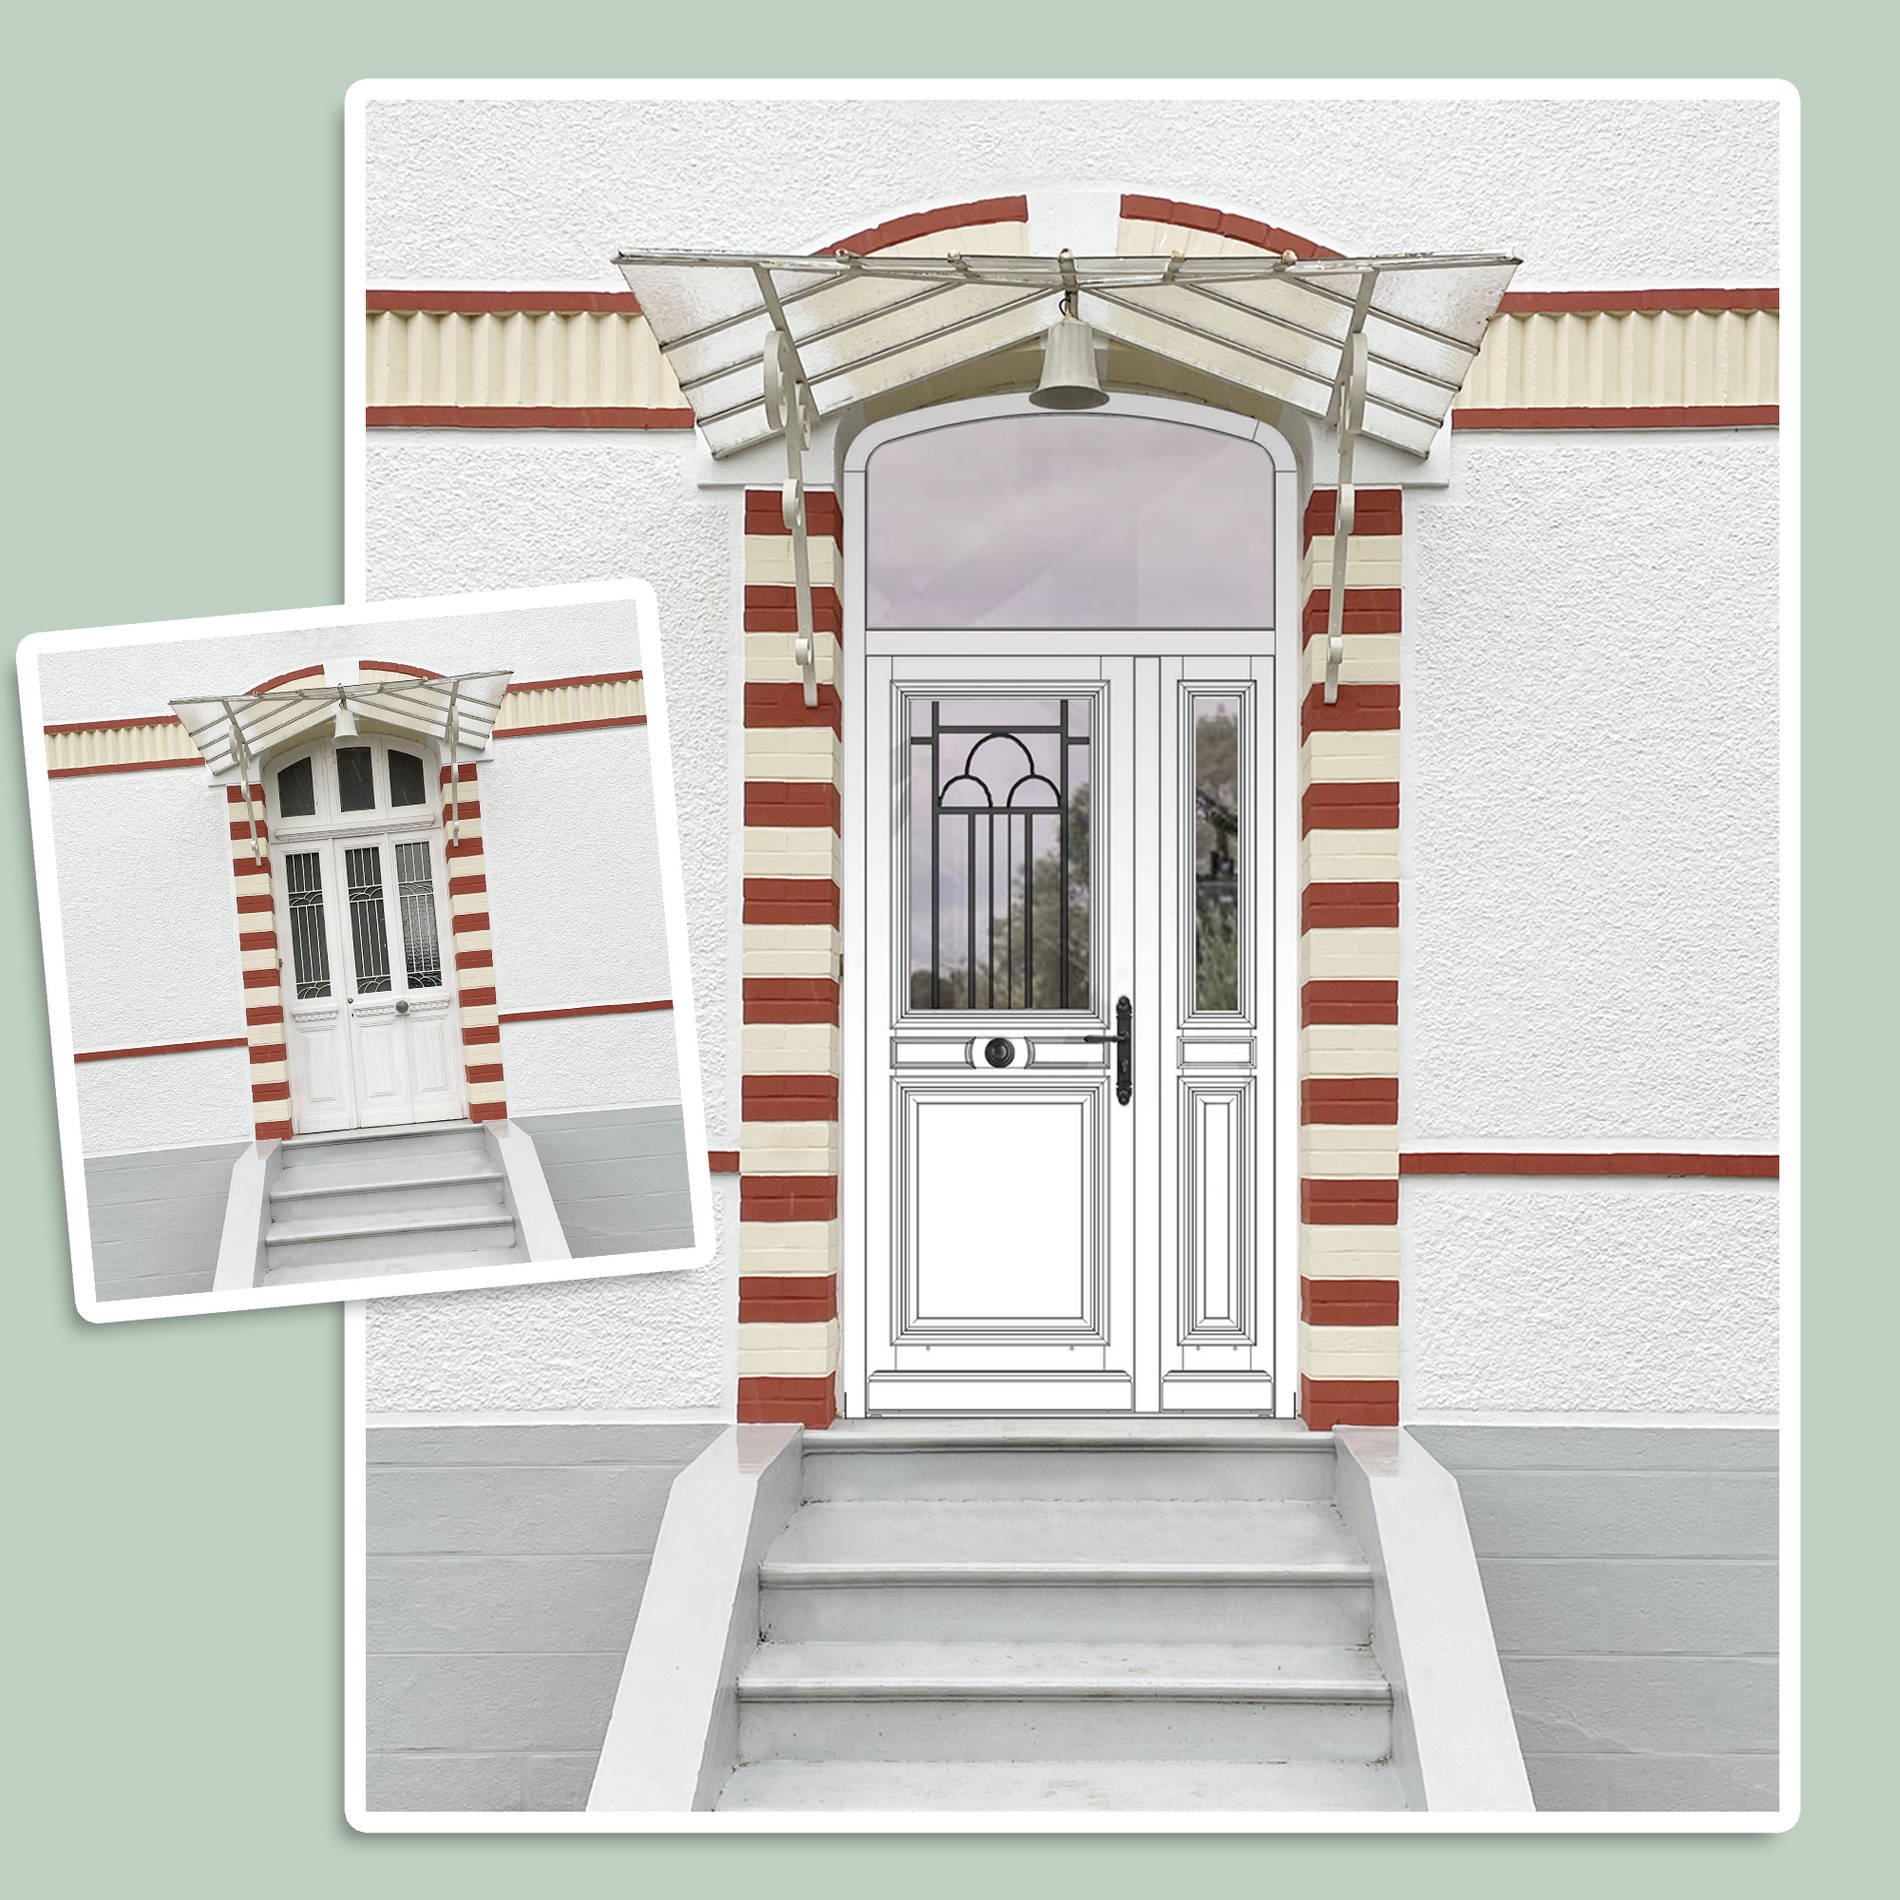 Graphic CRi - projection avec un montage photoshop d'une porte d'entrée d'après un dessin technique